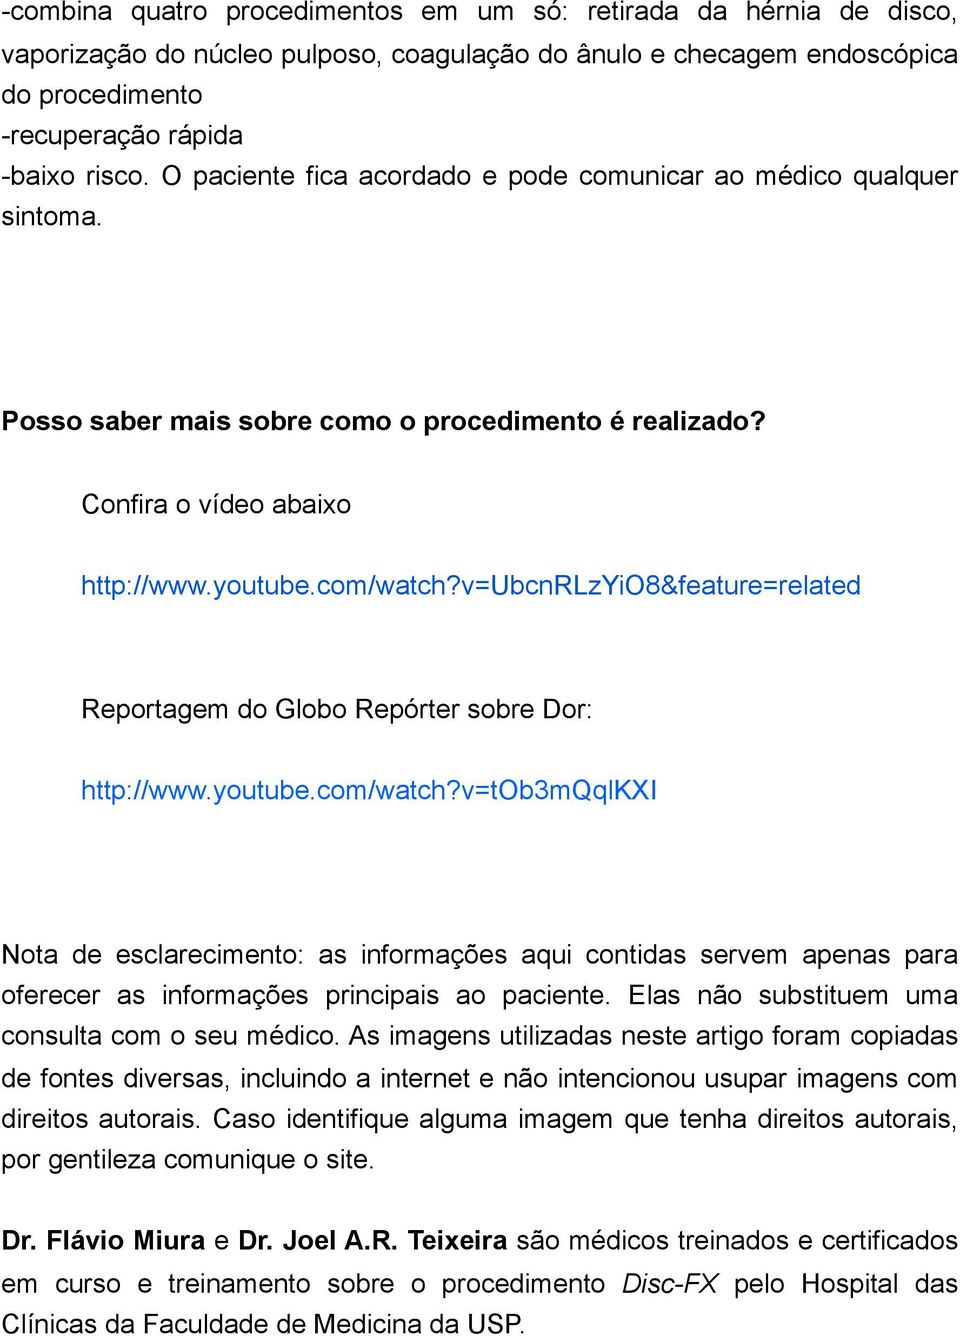 v=ubcnrlzyio8&feature=related Reportagem do Globo Repórter sobre Dor: http://www.youtube.com/watch?